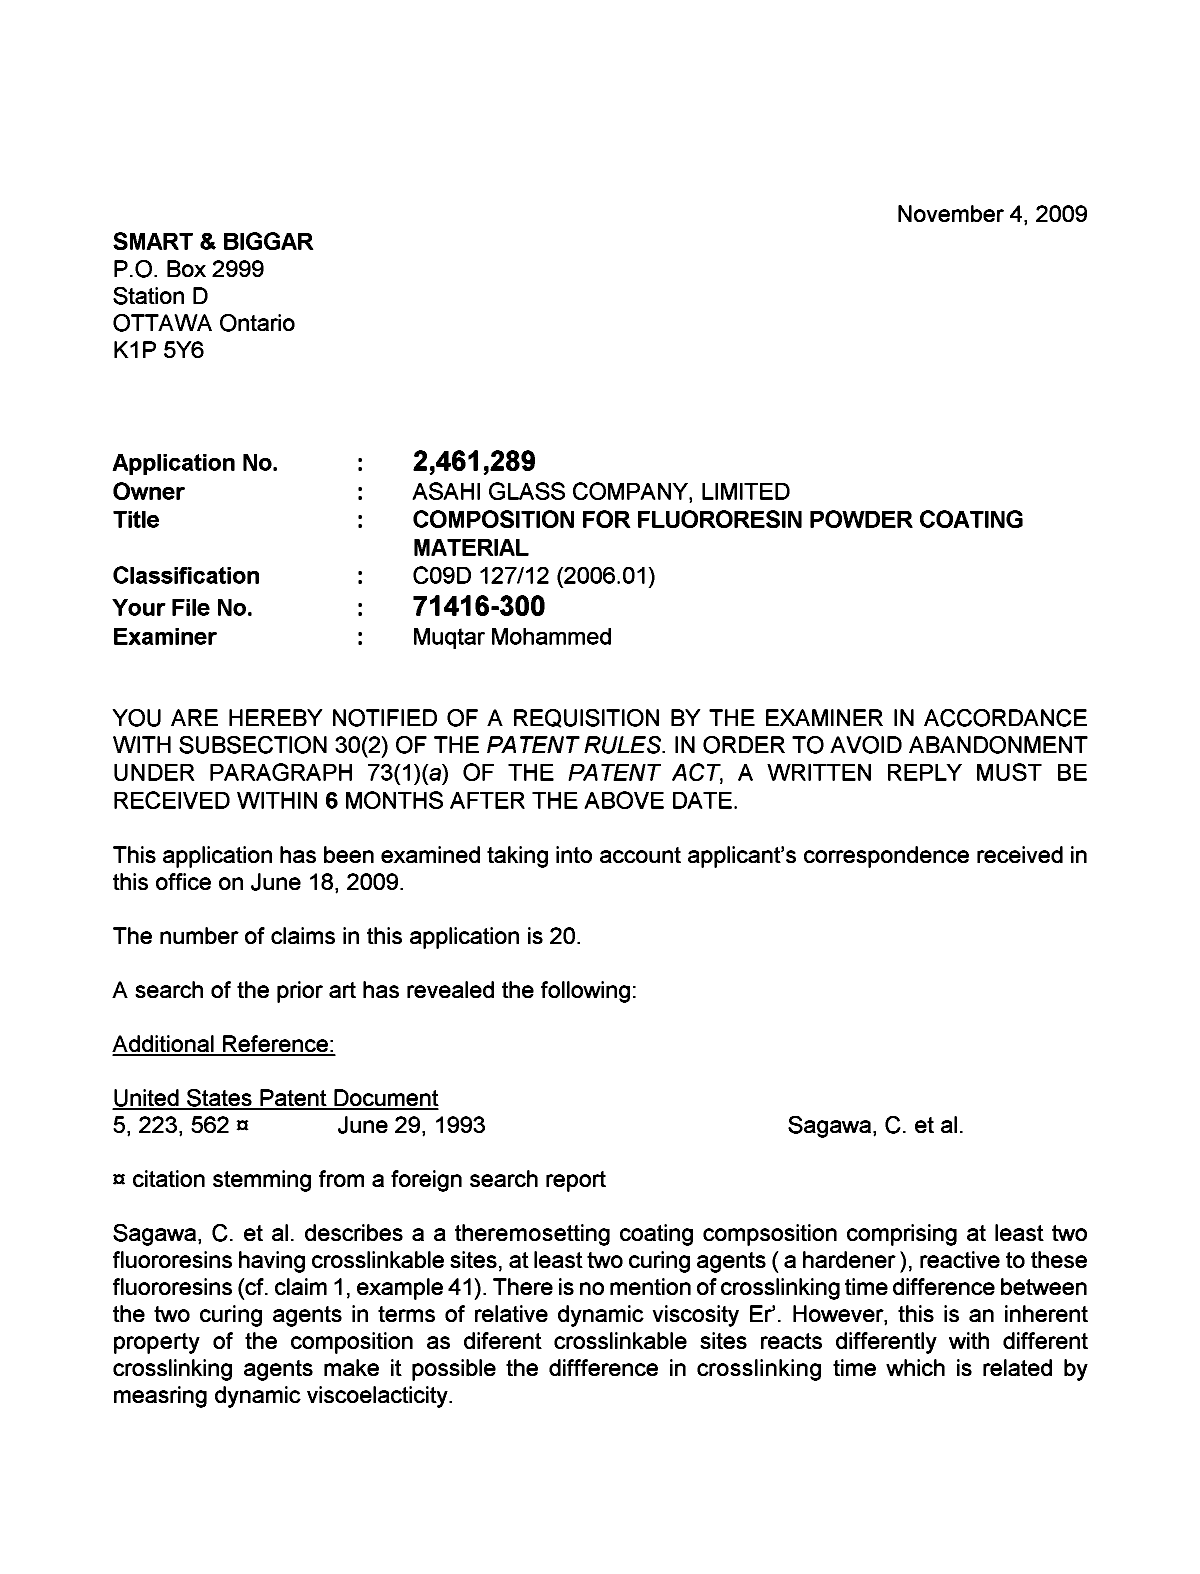 Document de brevet canadien 2461289. Poursuite-Amendment 20091104. Image 1 de 2